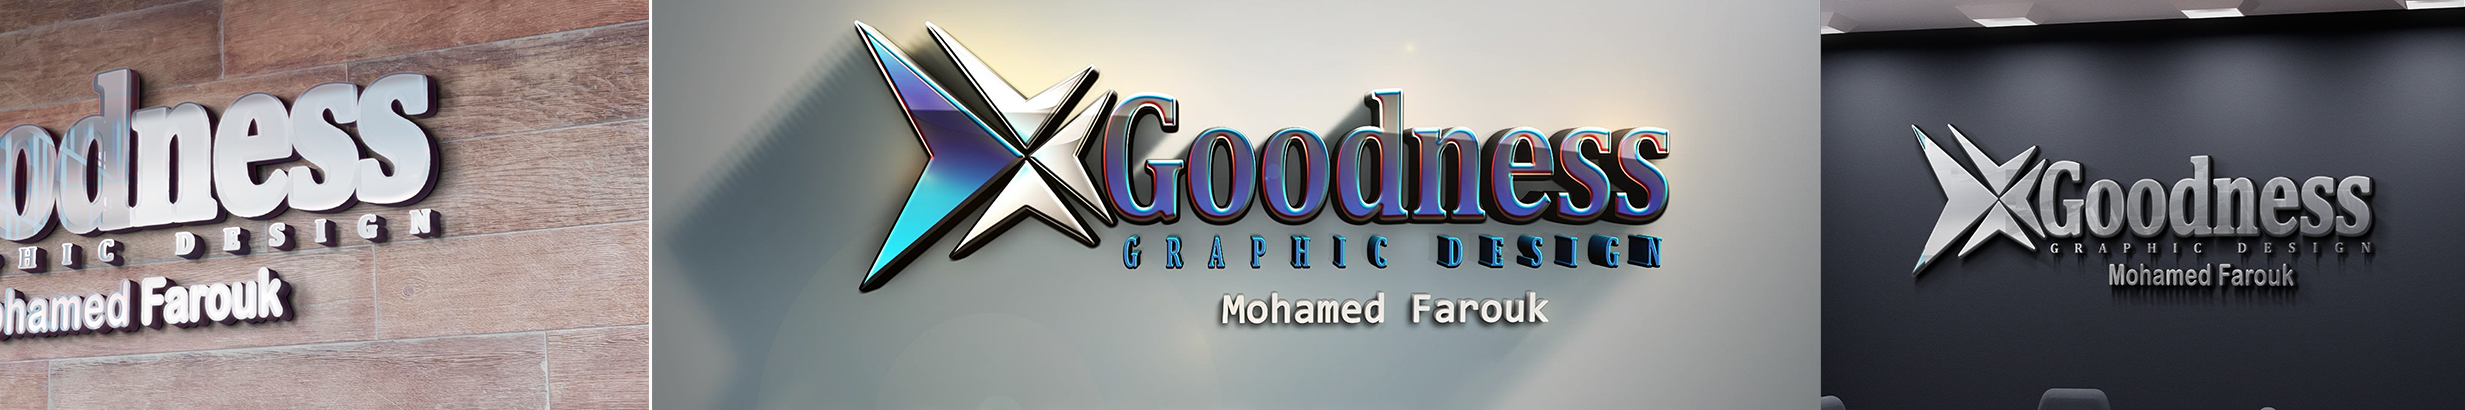 Banner profilu uživatele Mohamed Farouk